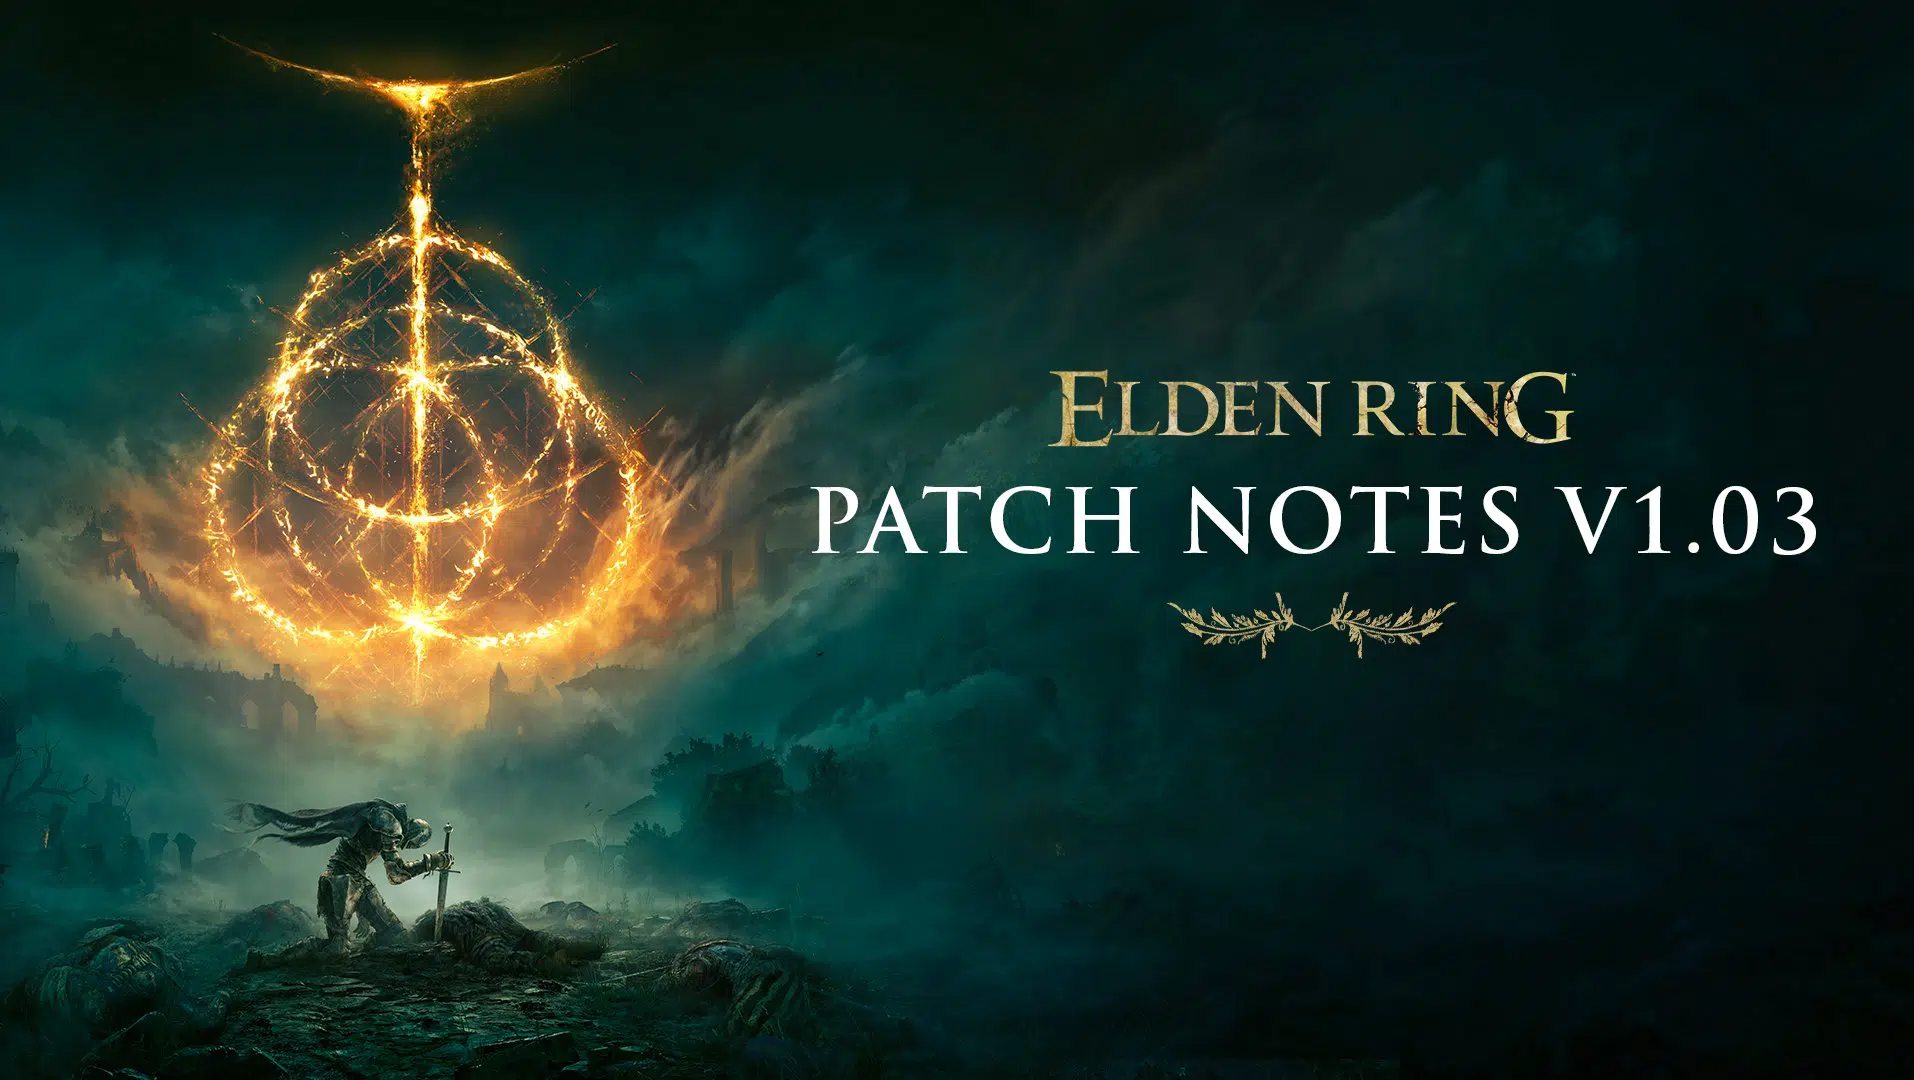 Elden Ring Update 1.03